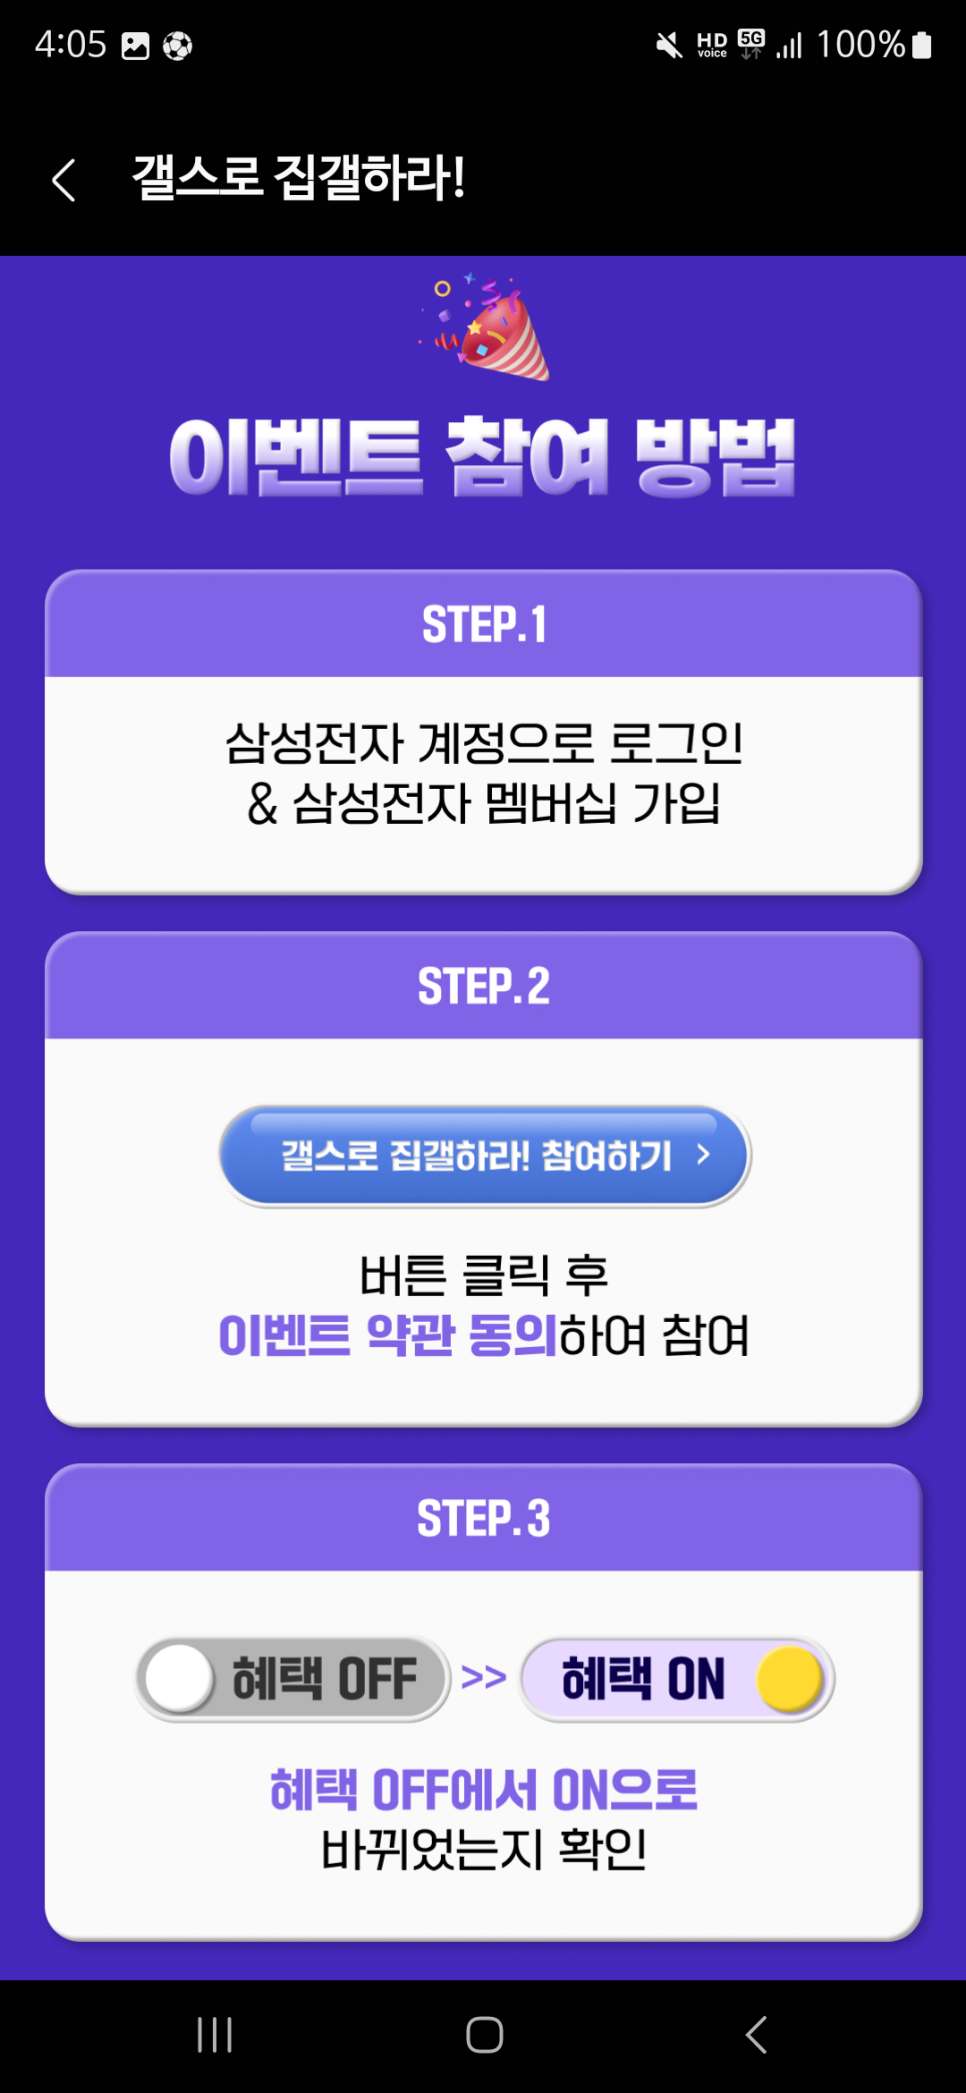 페르소나5 더 팬텀 X 친구초대, 쿠폰·티어·30% 페이백·최신 갤럭시 스토어 혜택 총정리